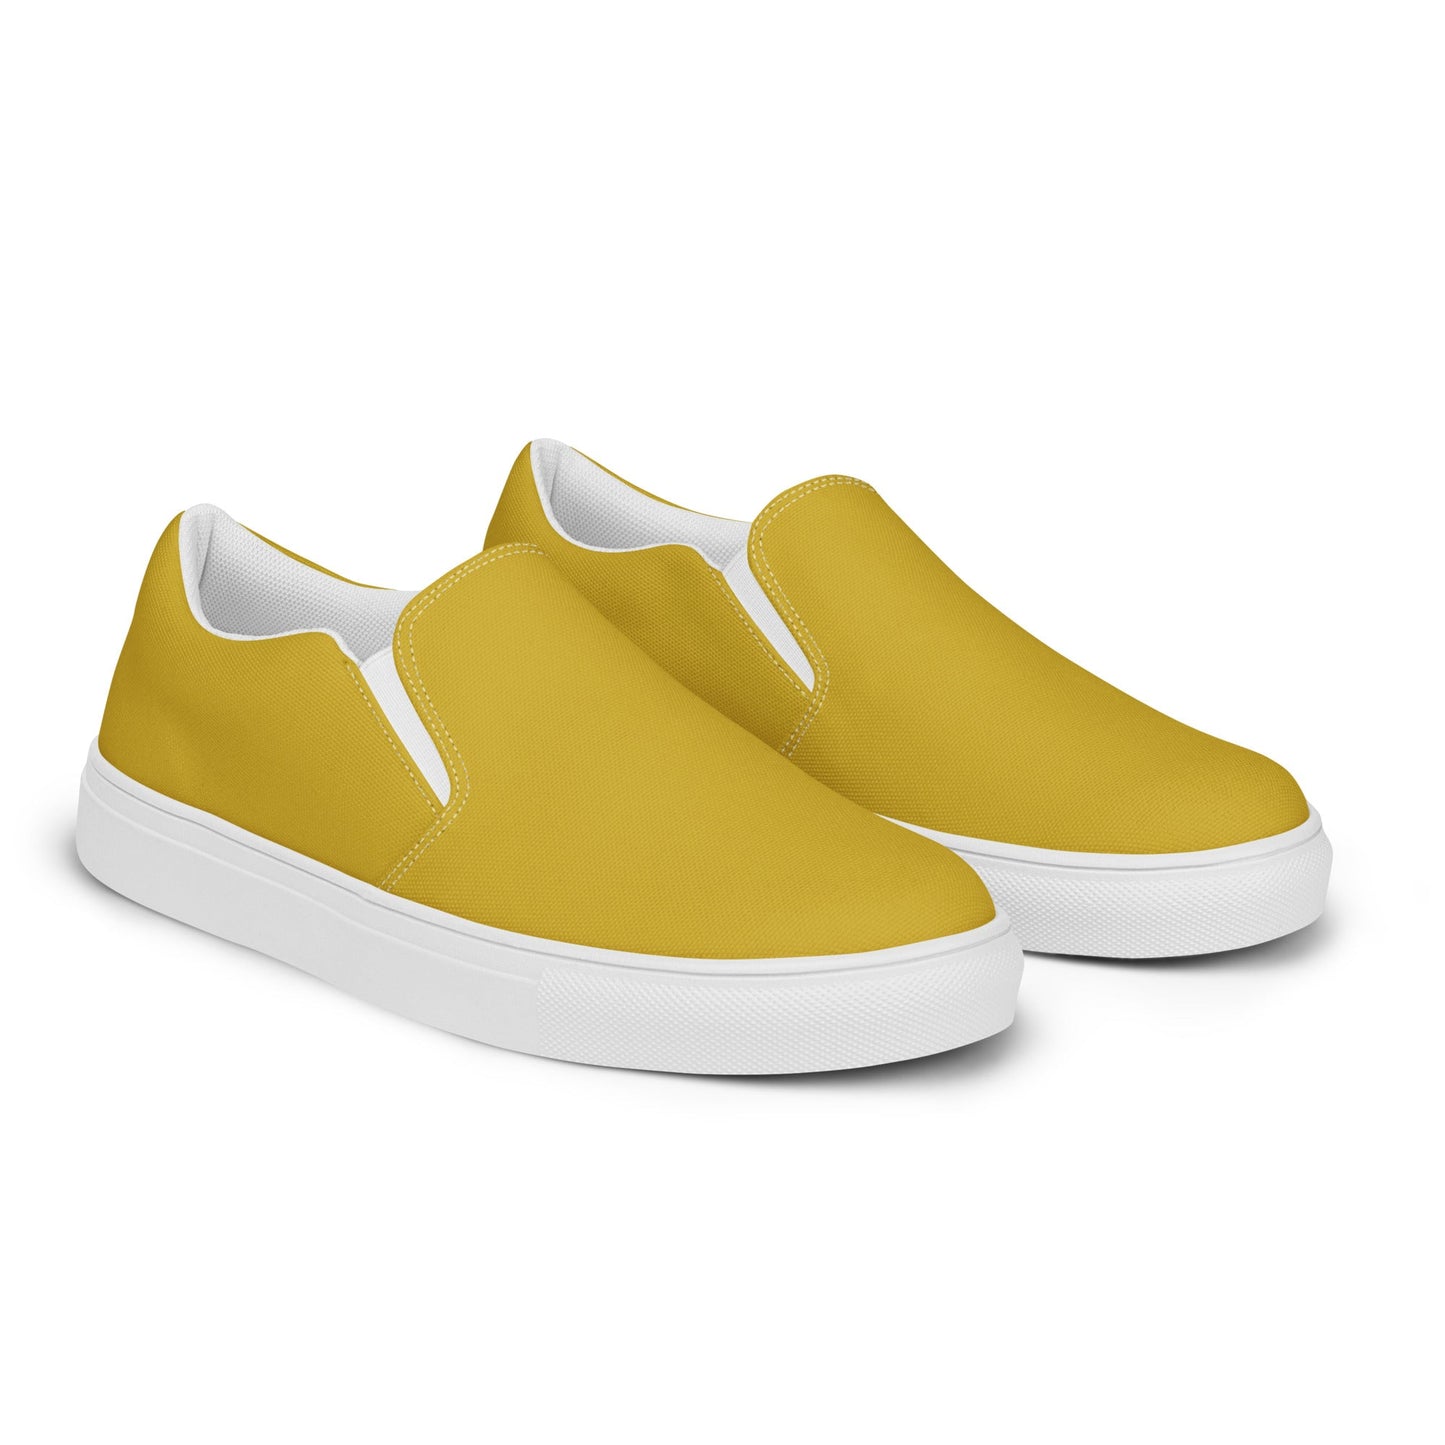 klasneakers Men’s slip-on canvas shoes - Gold